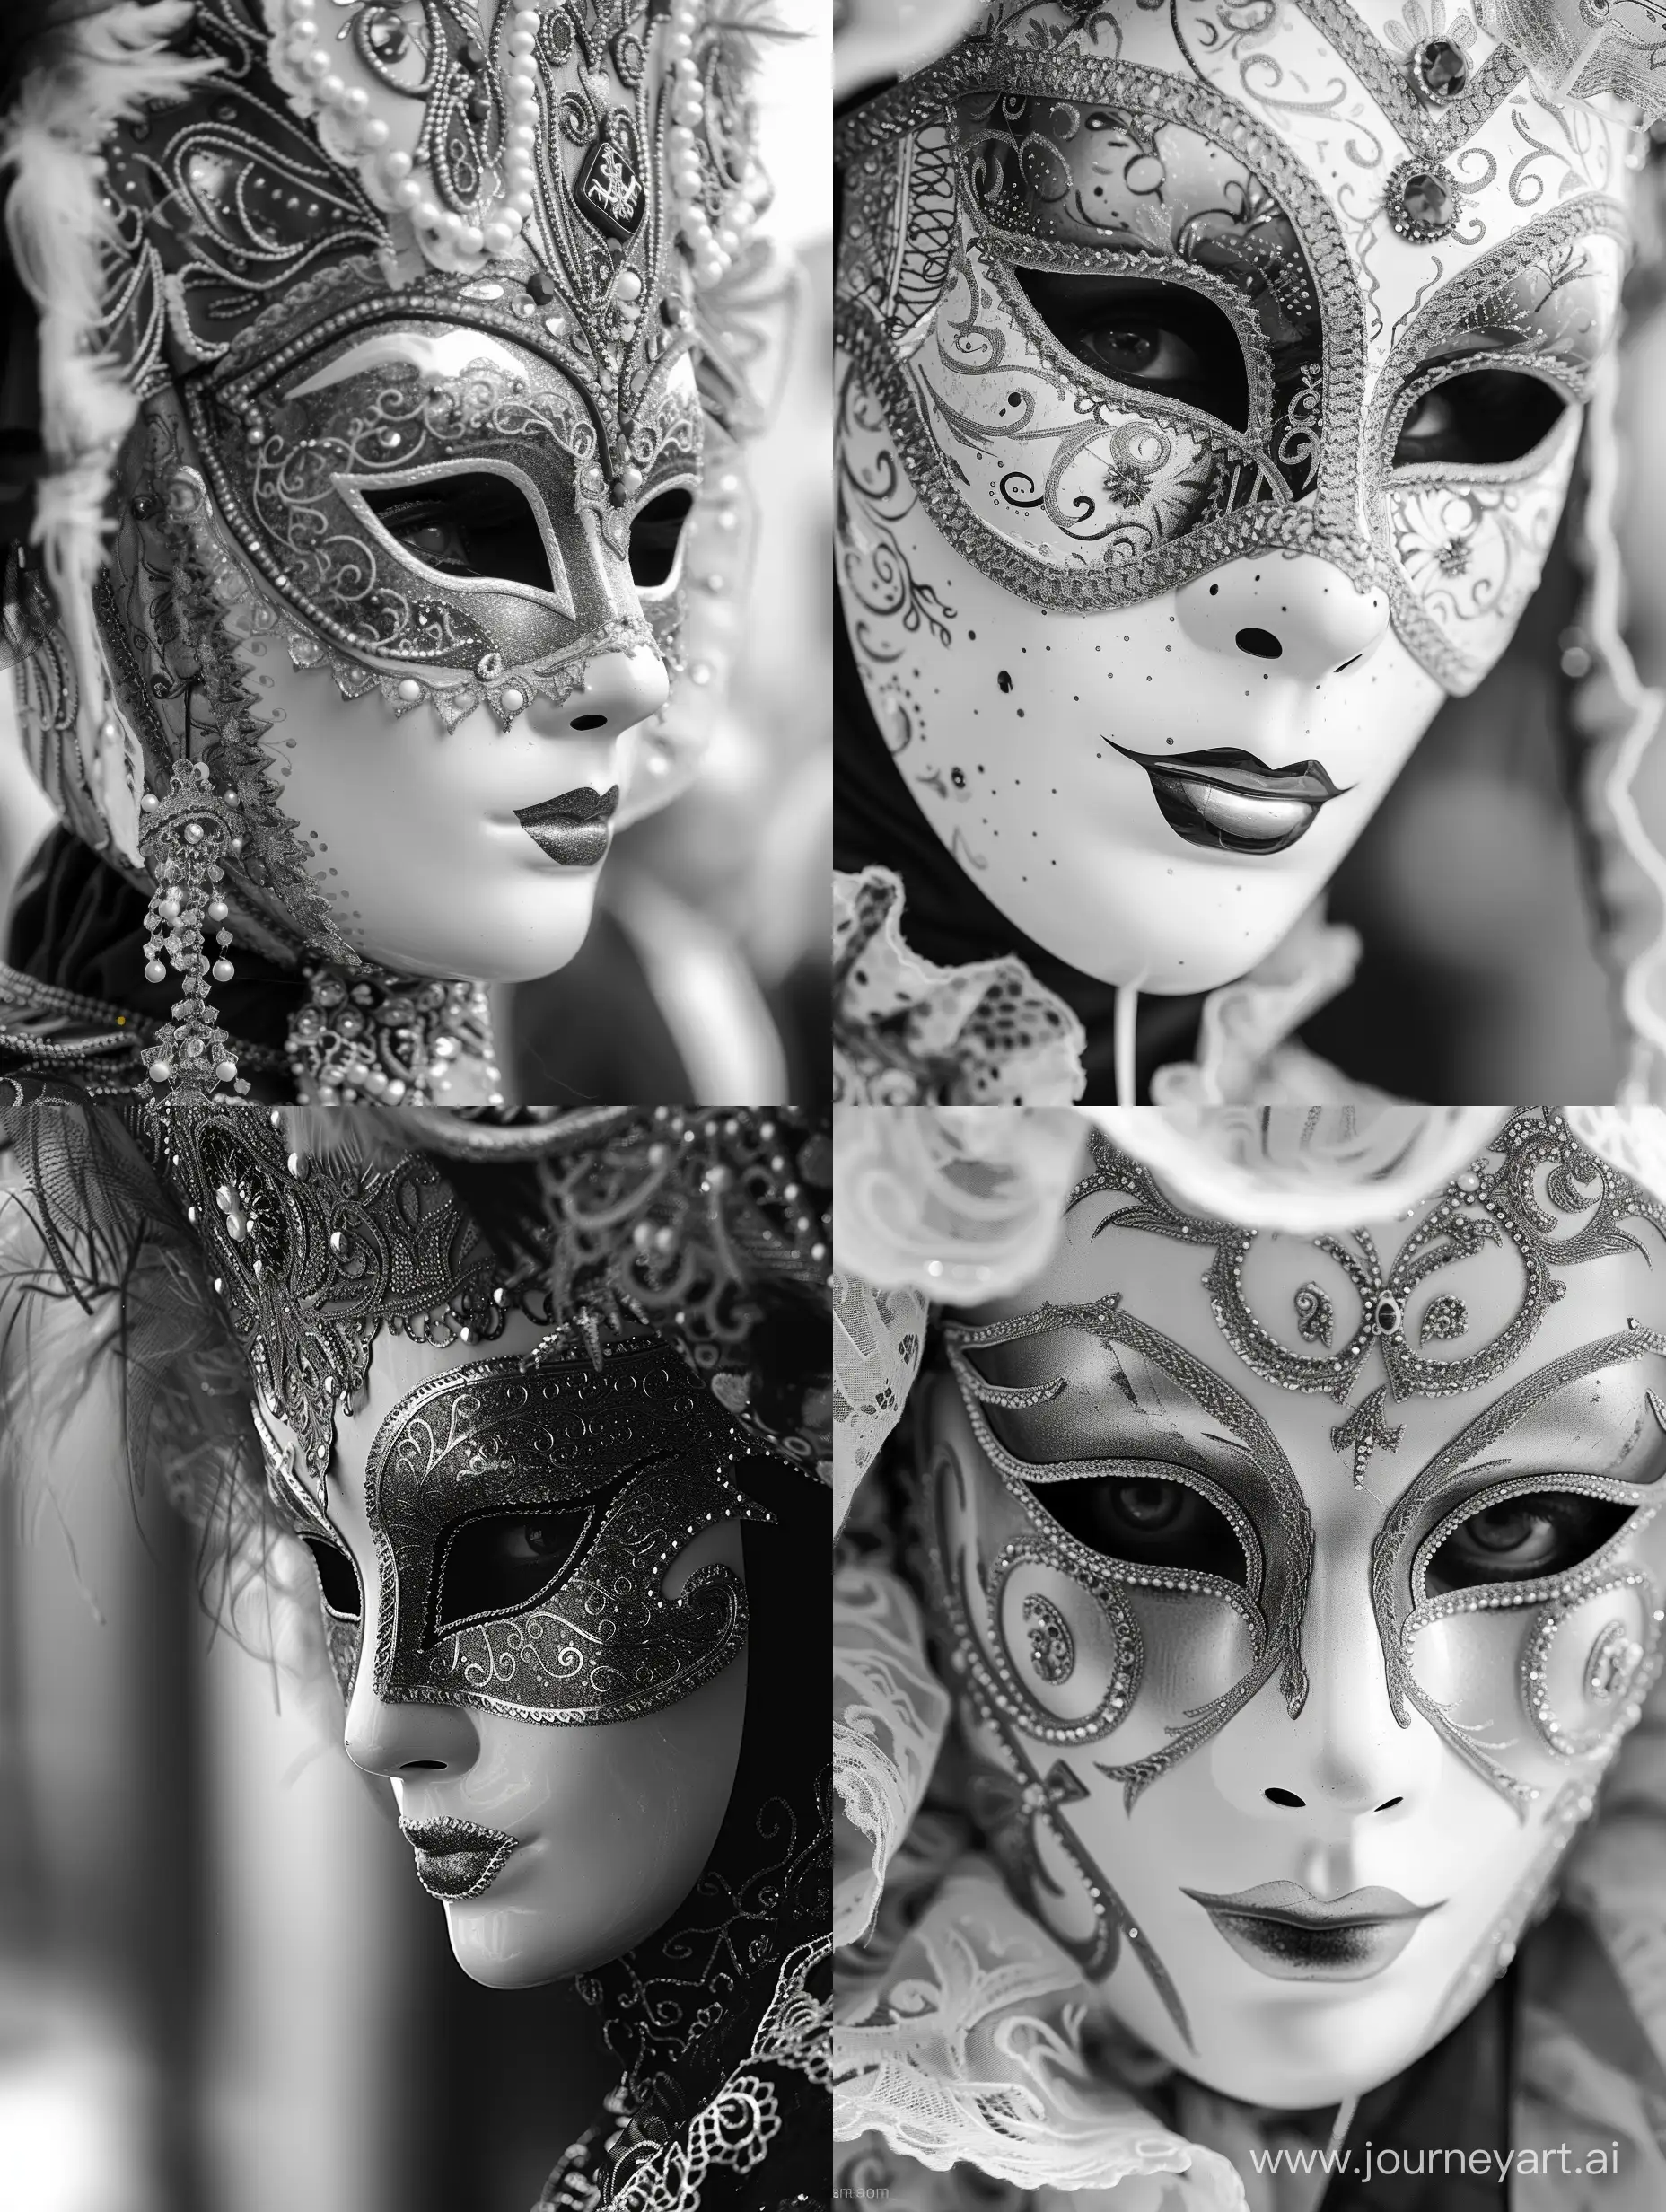 Maschera di carnevale a Venezia in bianco e nero